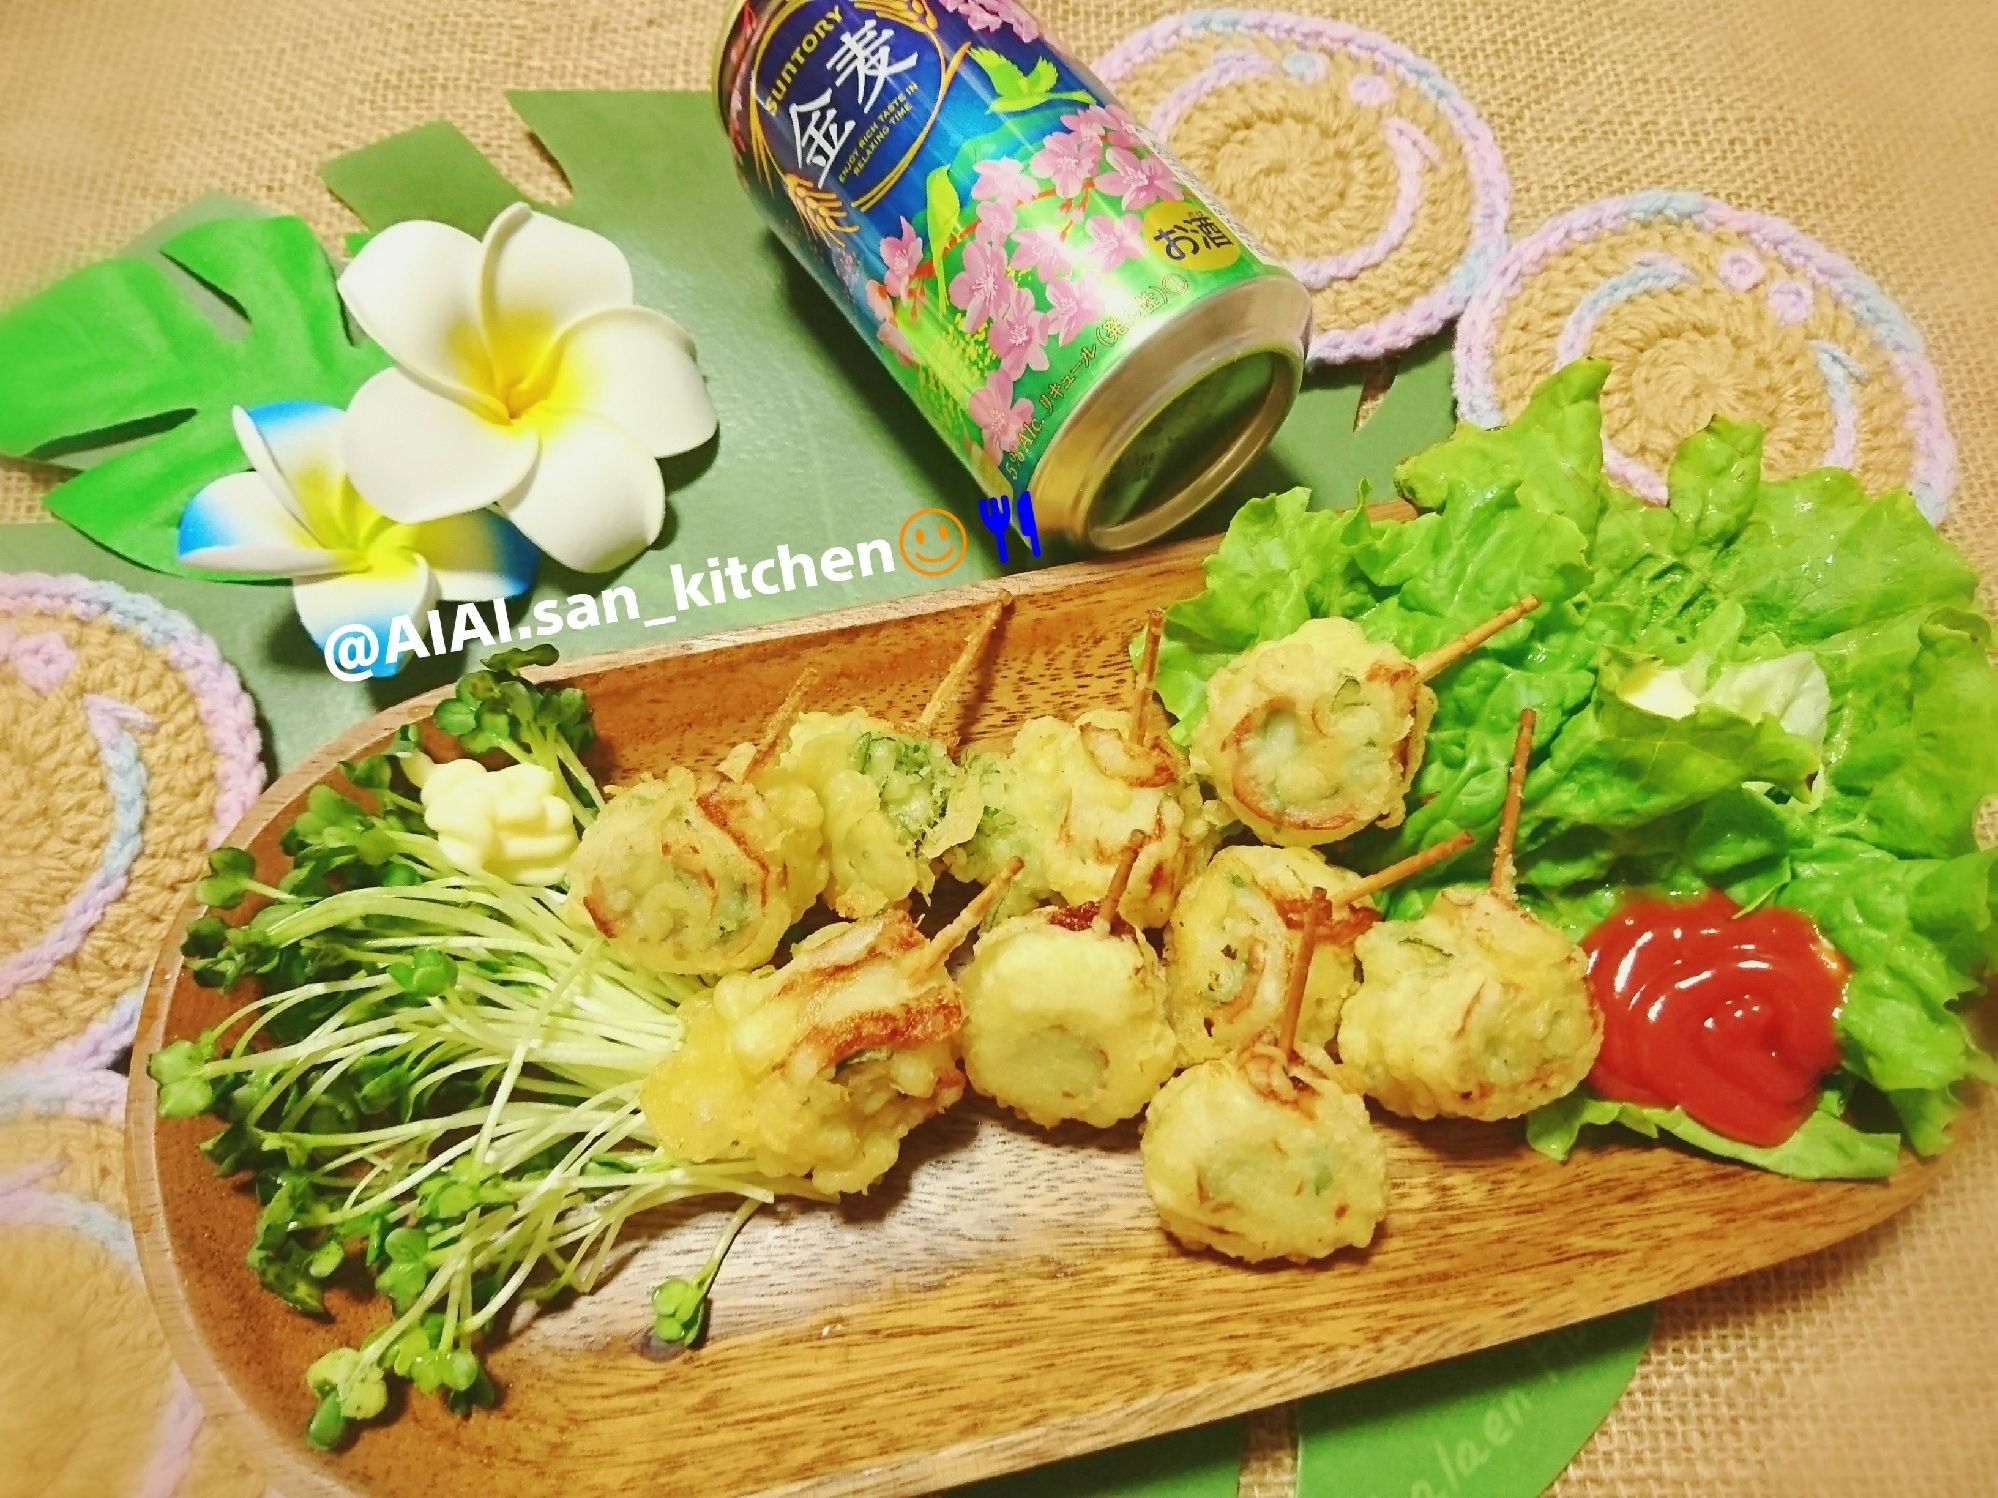 ぱくぱく食べれる 青しそちくわ天ぷら レシピ 作り方 By 愛愛さん 基本画像レシピ Instagramも同じ 楽天レシピ